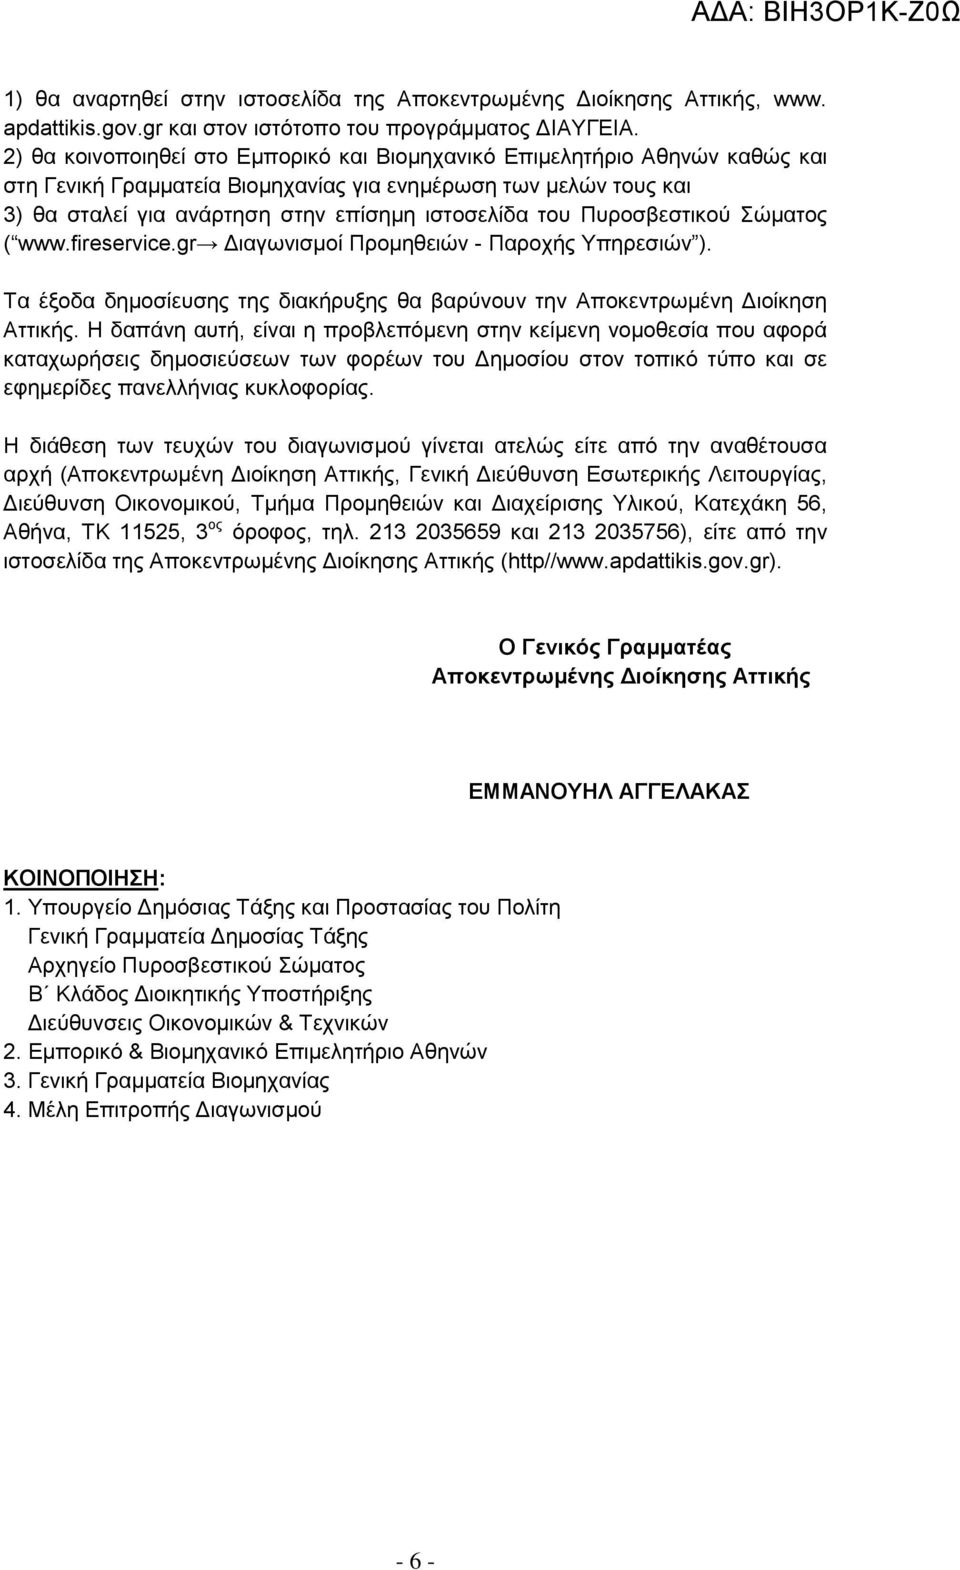 Πυροσβεστικού Σώματος ( www.fireservice.gr Διαγωνισμοί Προμηθειών - Παροχής Υπηρεσιών ). Τα έξοδα δημοσίευσης της διακήρυξης θα βαρύνουν την Αποκεντρωμένη Διοίκηση Αττικής.